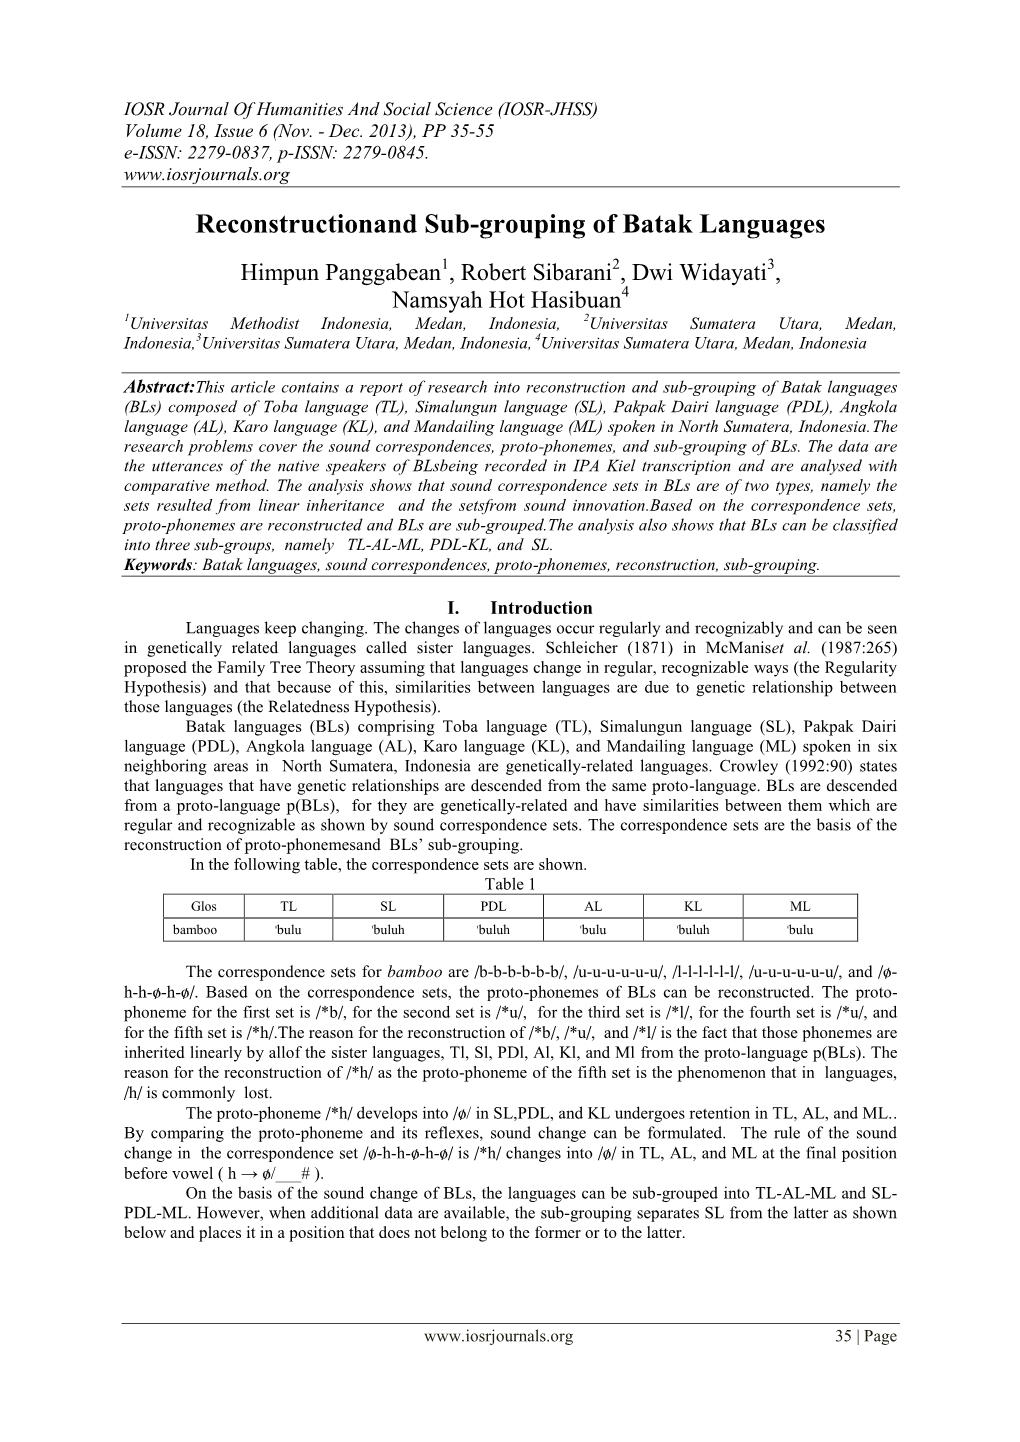 Reconstructionand Sub-Grouping of Batak Languages